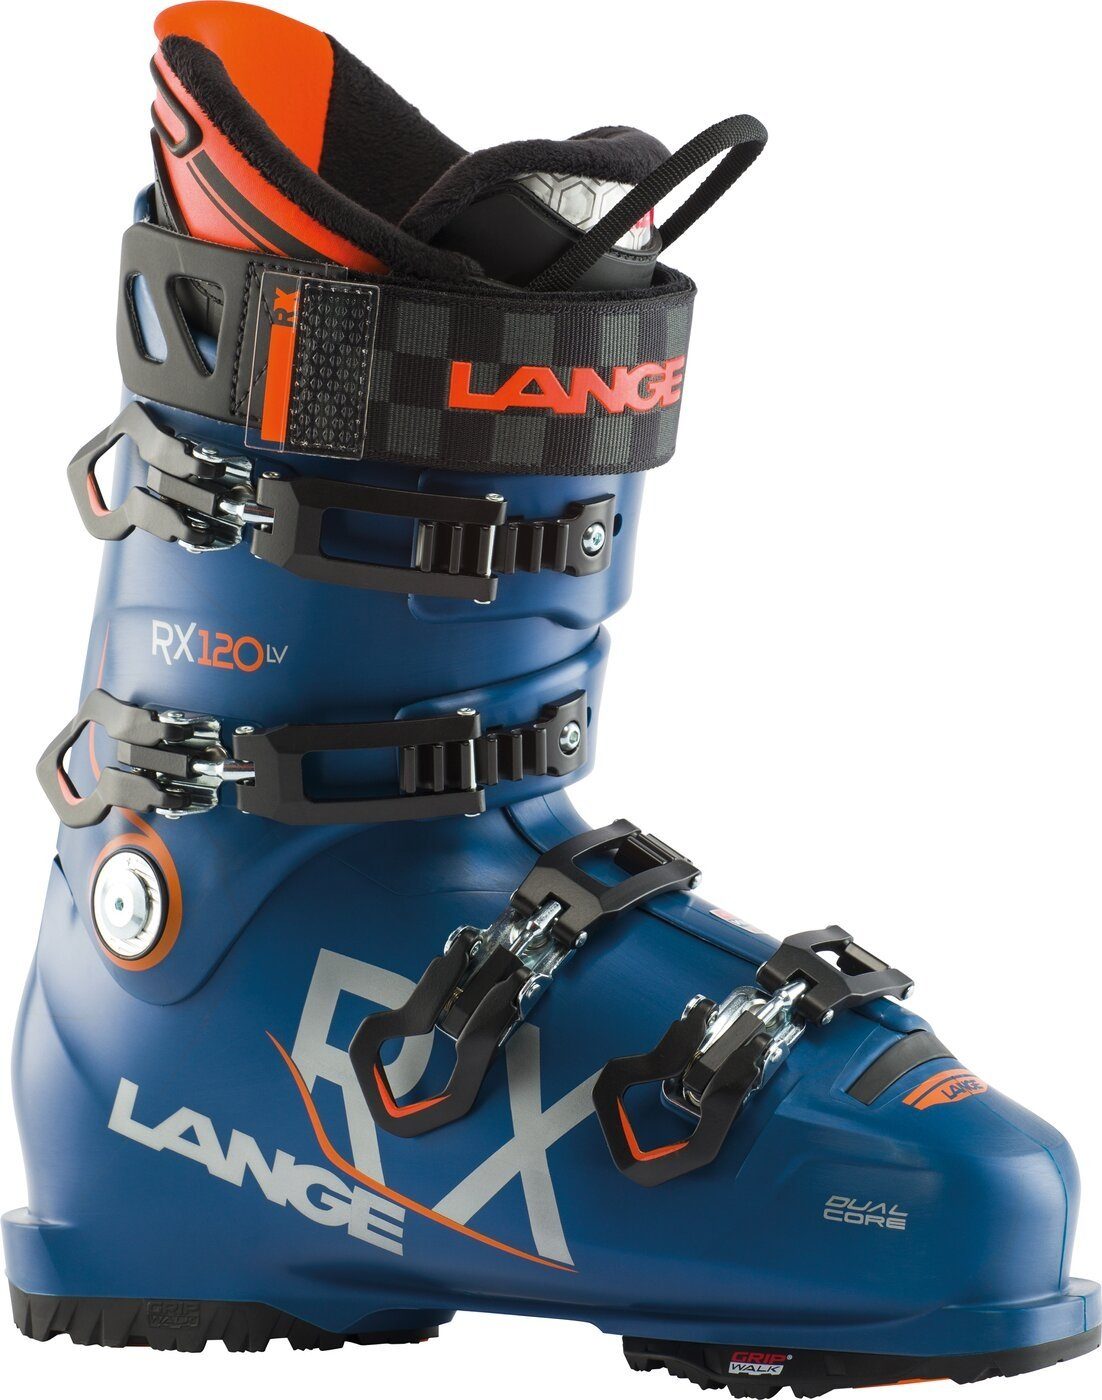 Lange RX 120 LV GW (NAVY BLUE) Skischuh